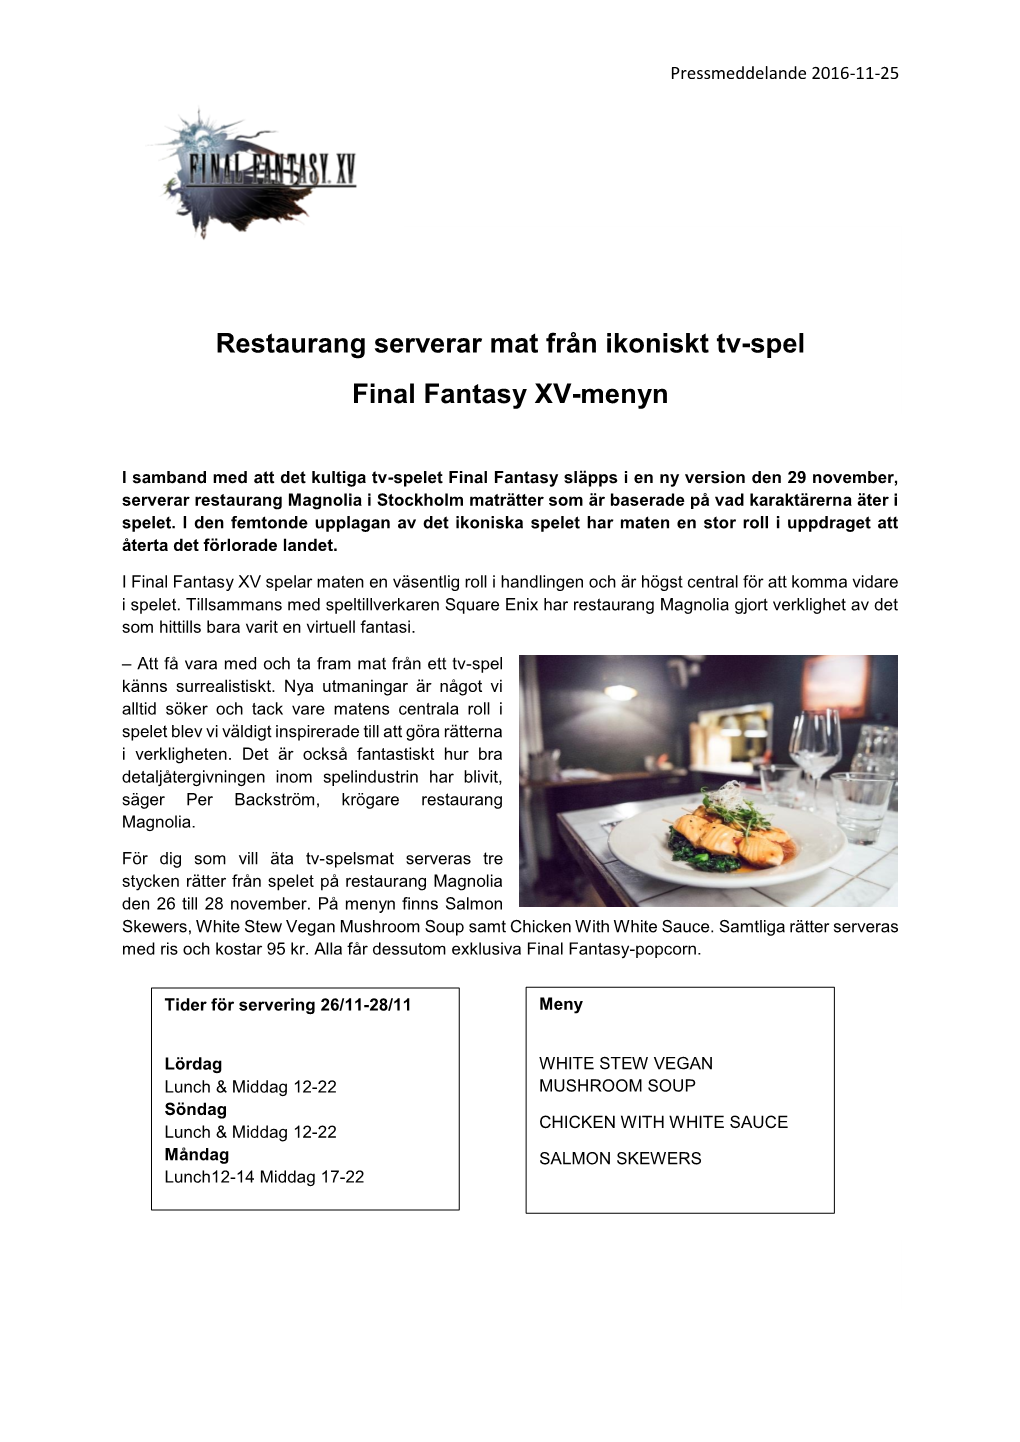 Restaurang Serverar Mat Från Ikoniskt Tv-Spel Final Fantasy XV-Menyn